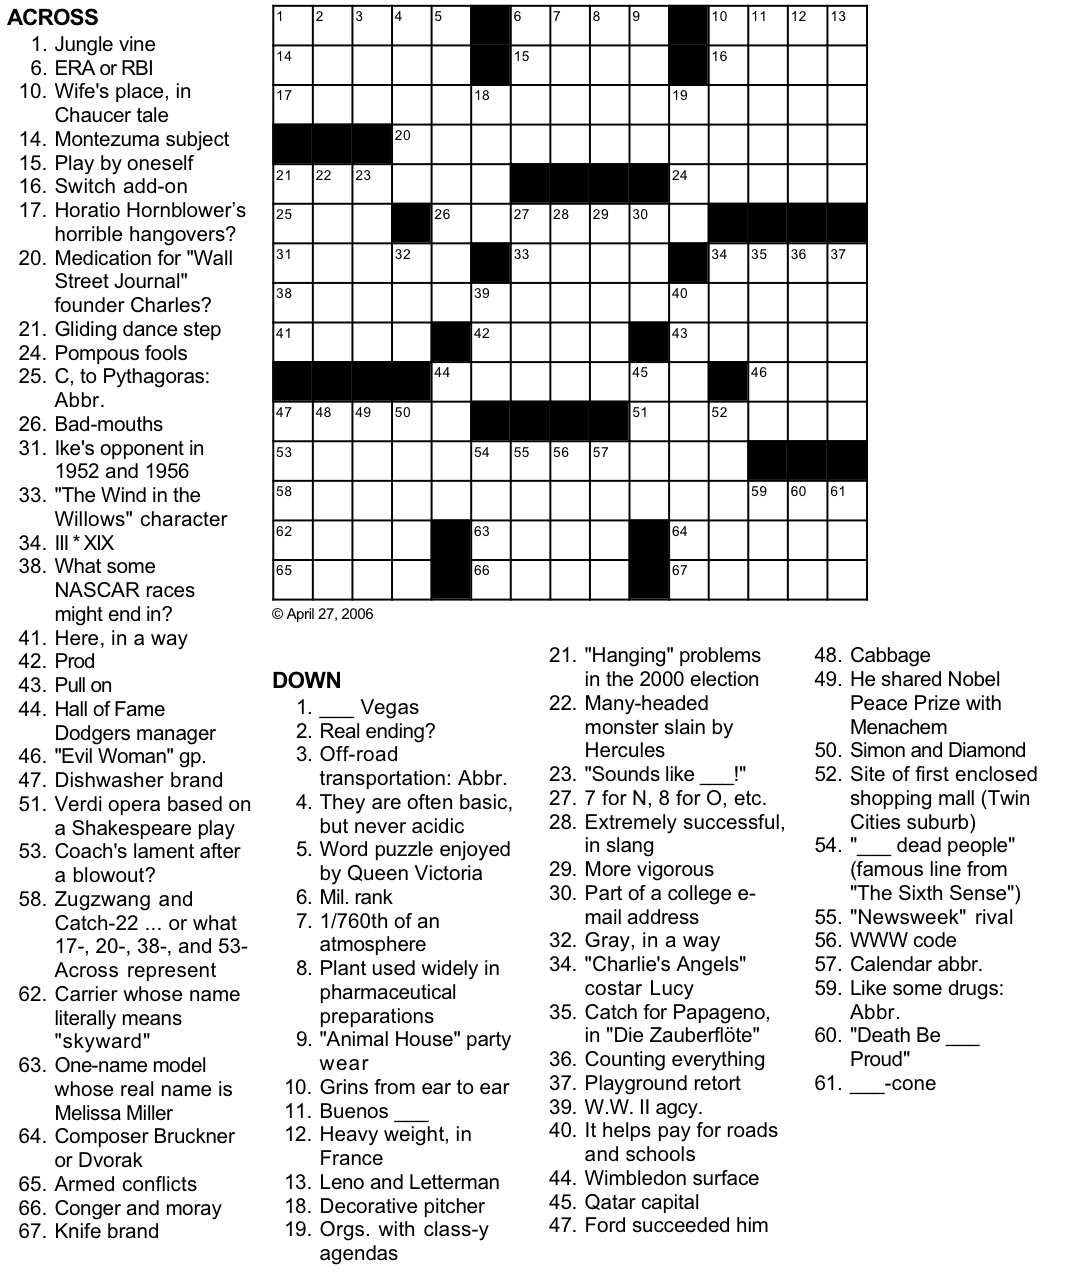 easy crossword puzzles